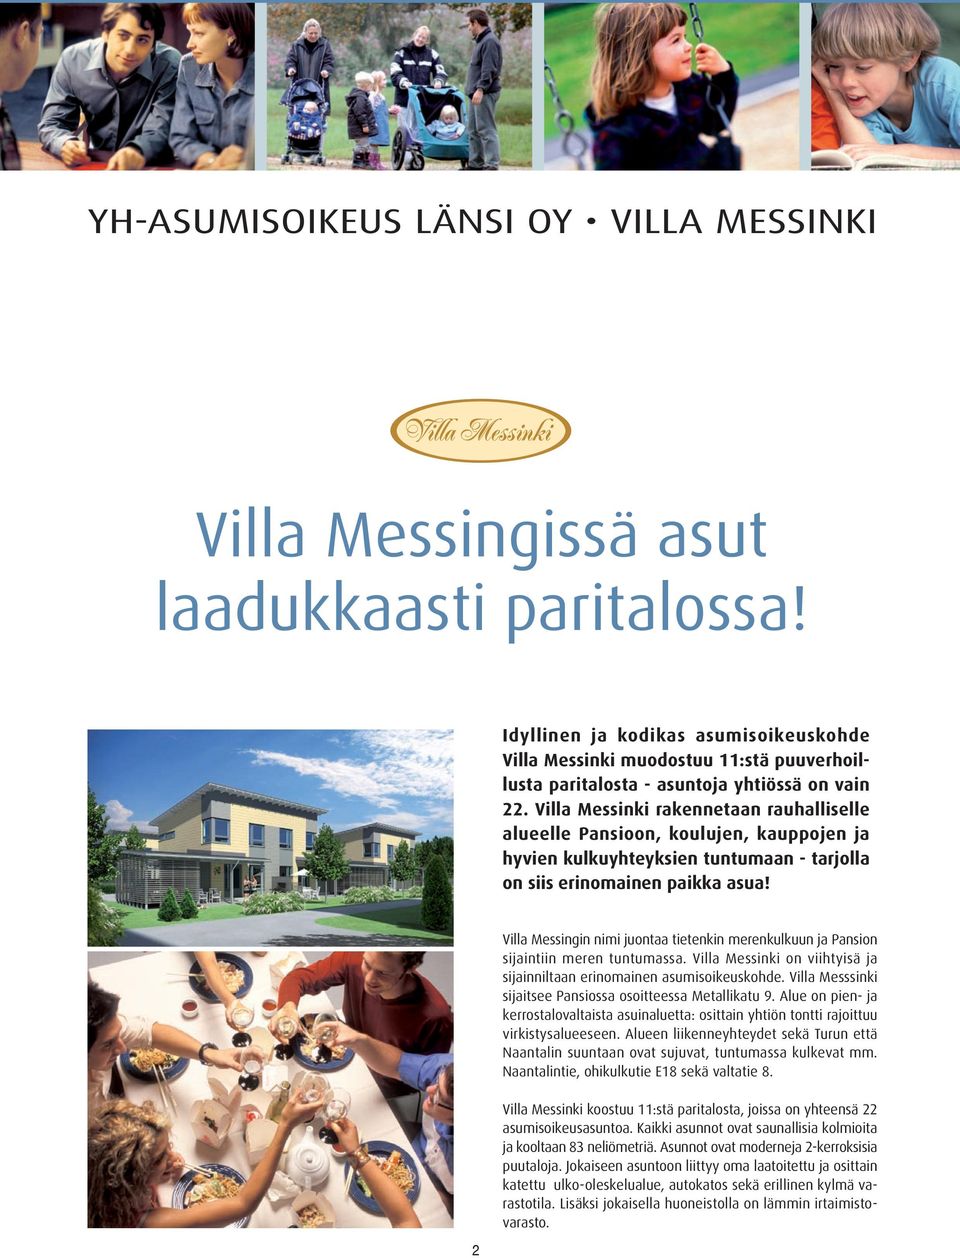 Villa Messinki rakennetaan rauhalliselle alueelle Pansioon, koulujen, kauppojen ja hyvien kulkuyhteyksien tuntumaan - tarjolla on siis erinomainen paikka asua!